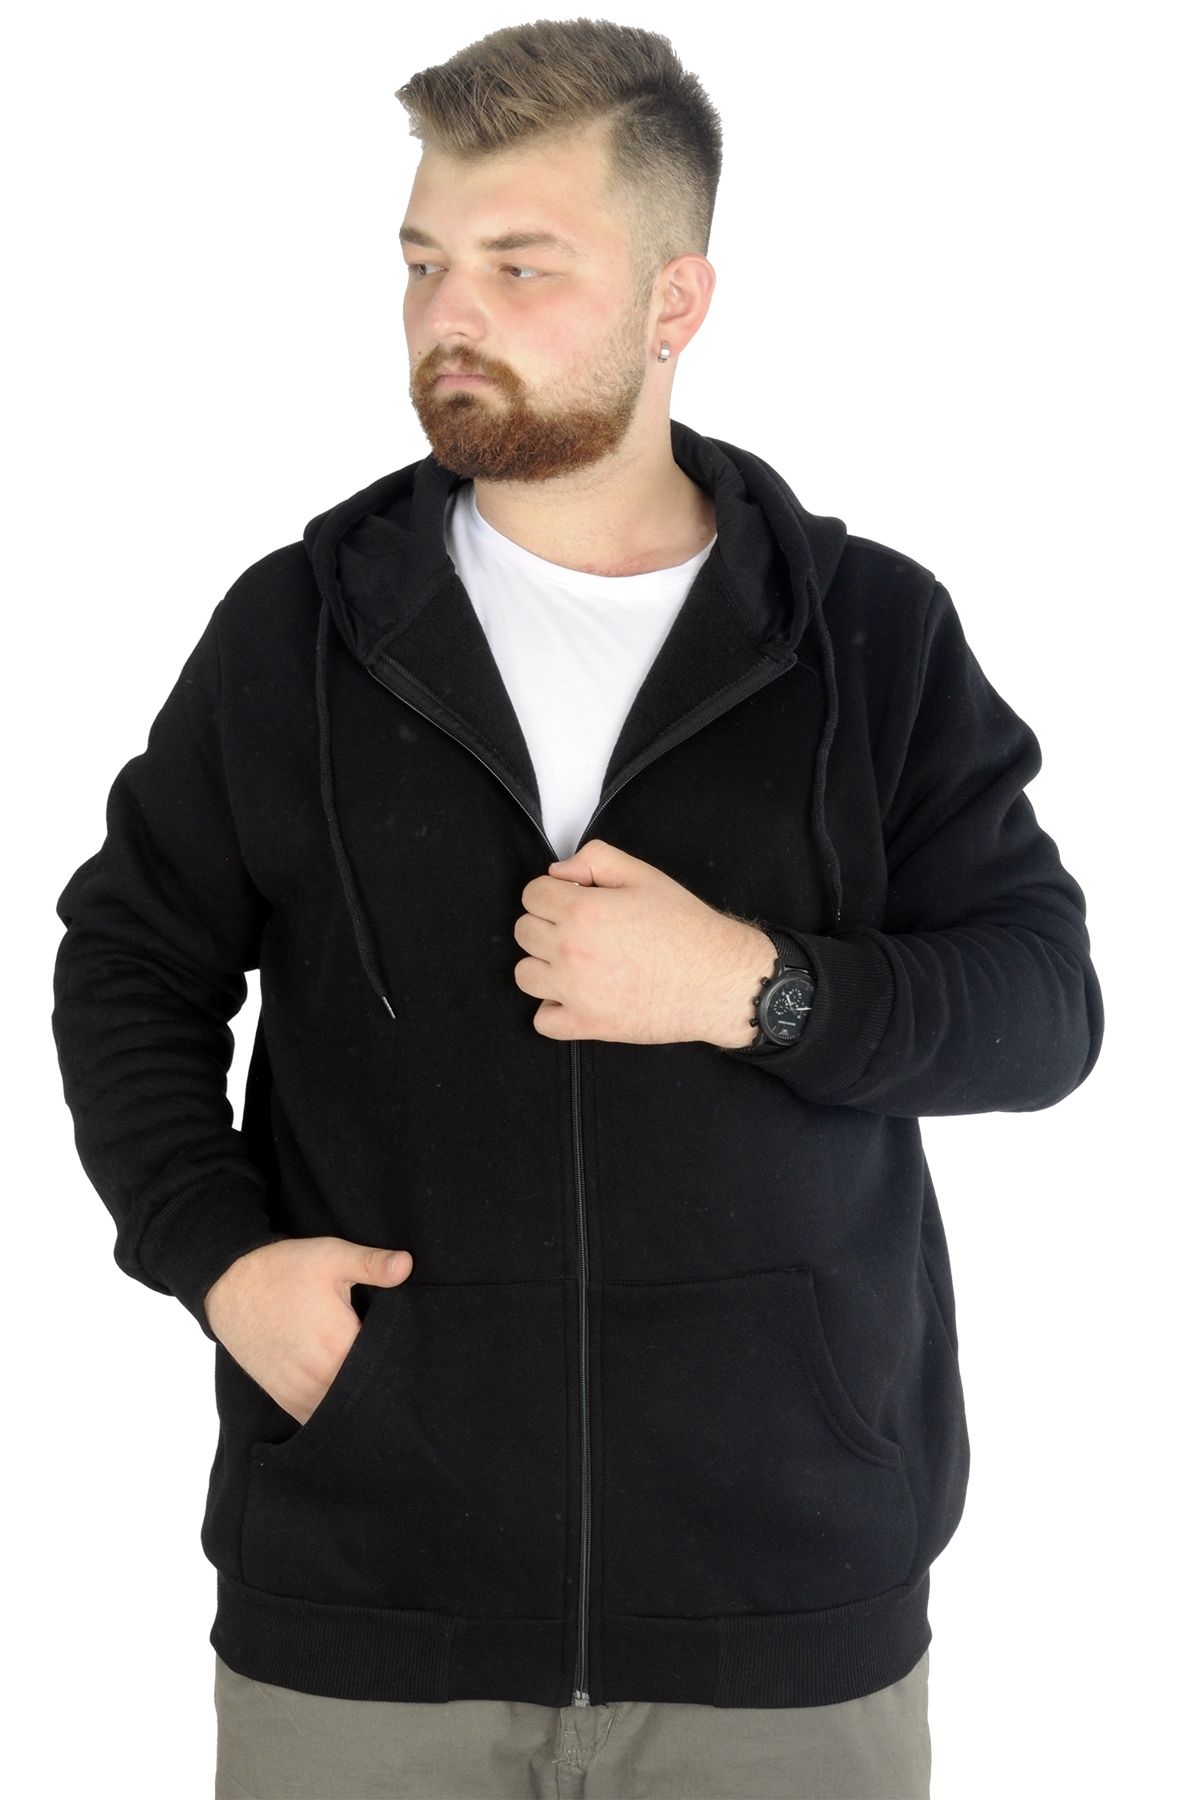 Modexl Mode Xl Erkek Sweatshirt Kapşonlu Zippered Basic 20543 Siyah